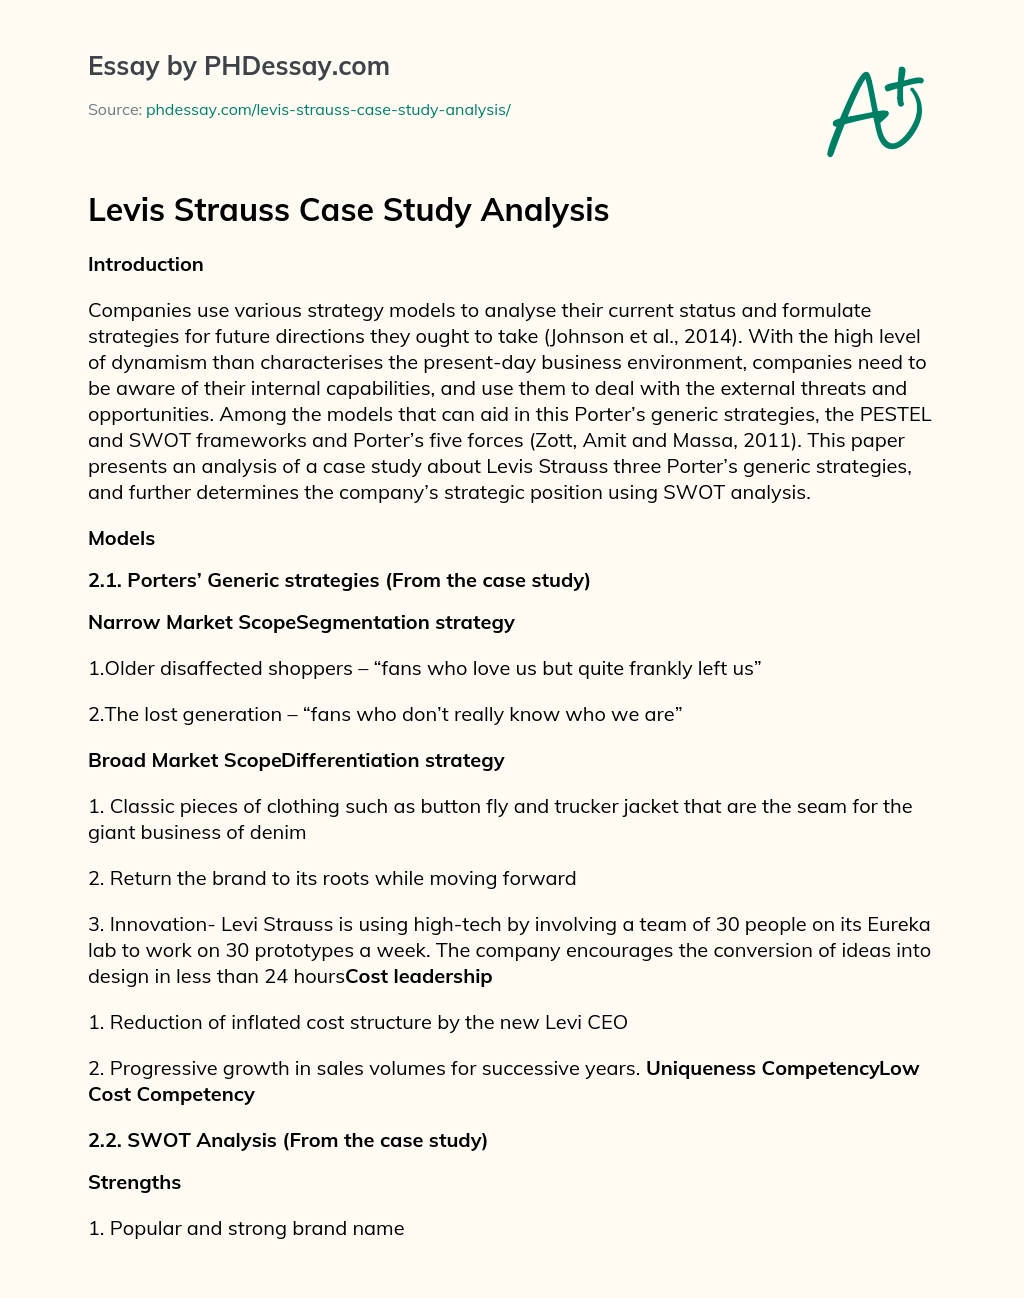 Levis Strauss Case Study Analysis essay